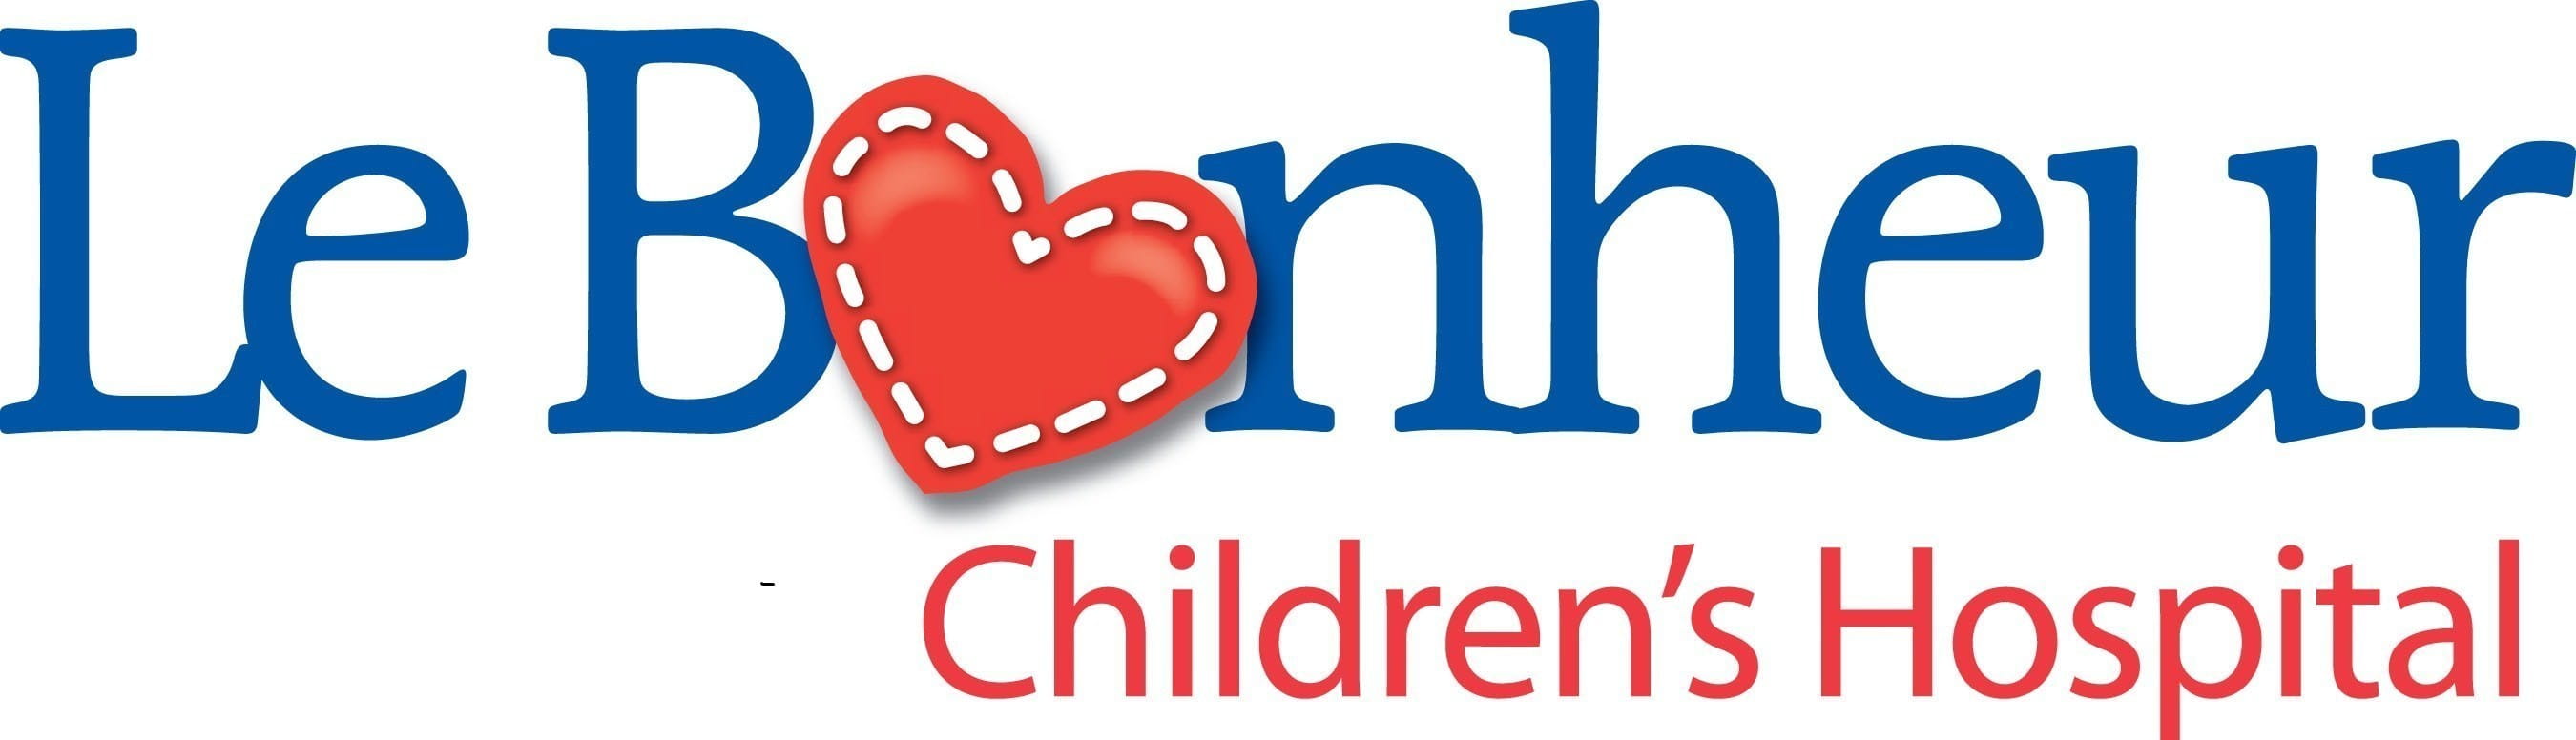 LeBonheur Children's Hospital logo